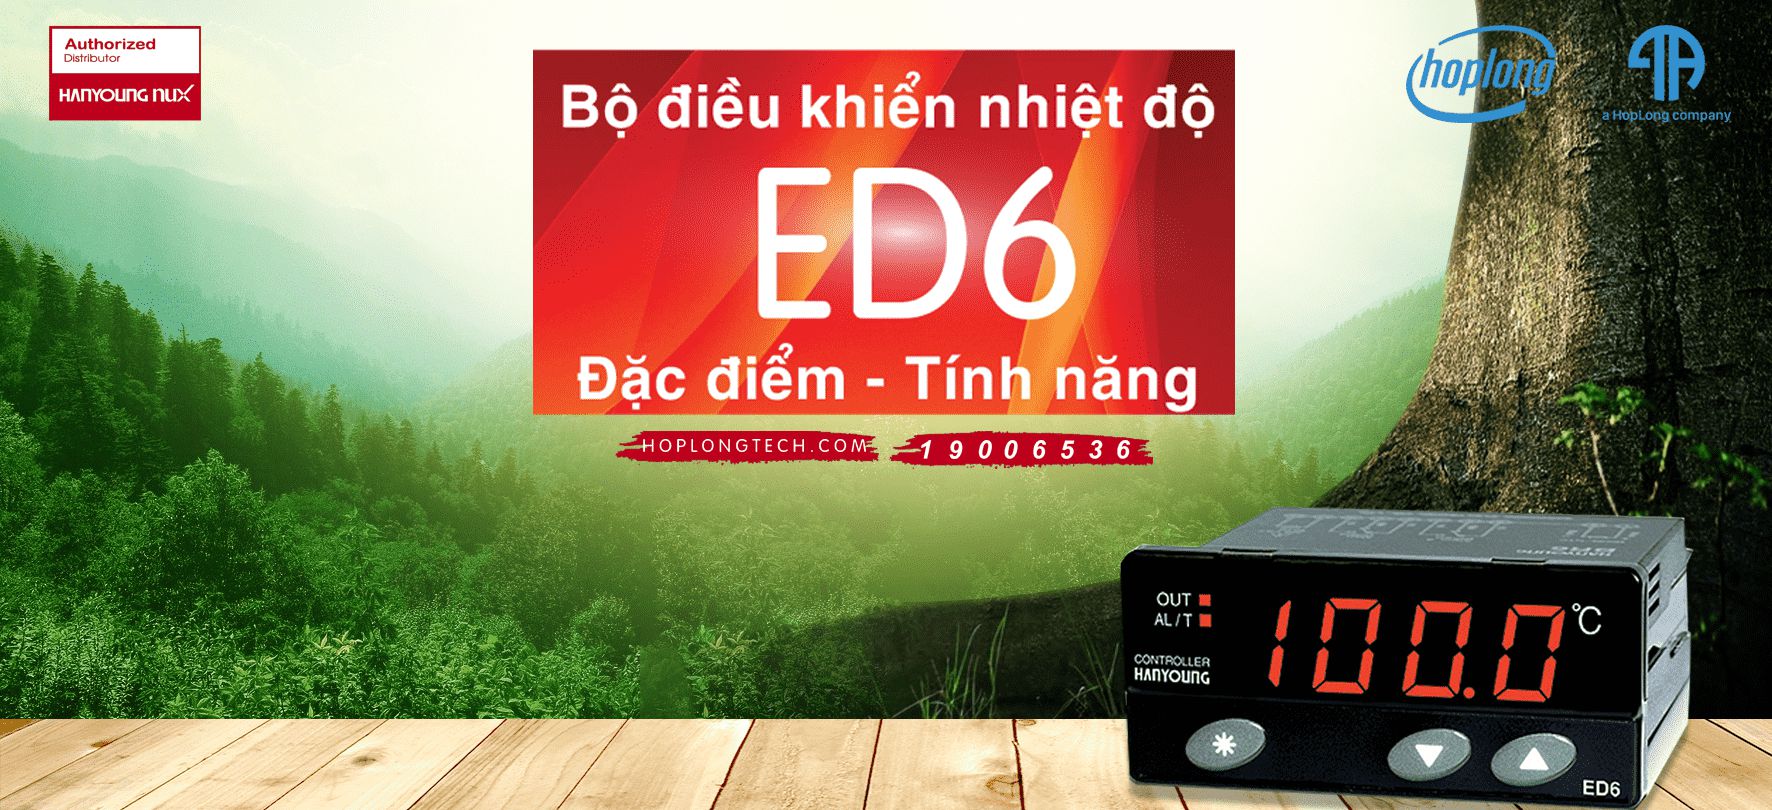 Bộ điều khiển nhiệt độ ED6 - ưu điểm và tính năng